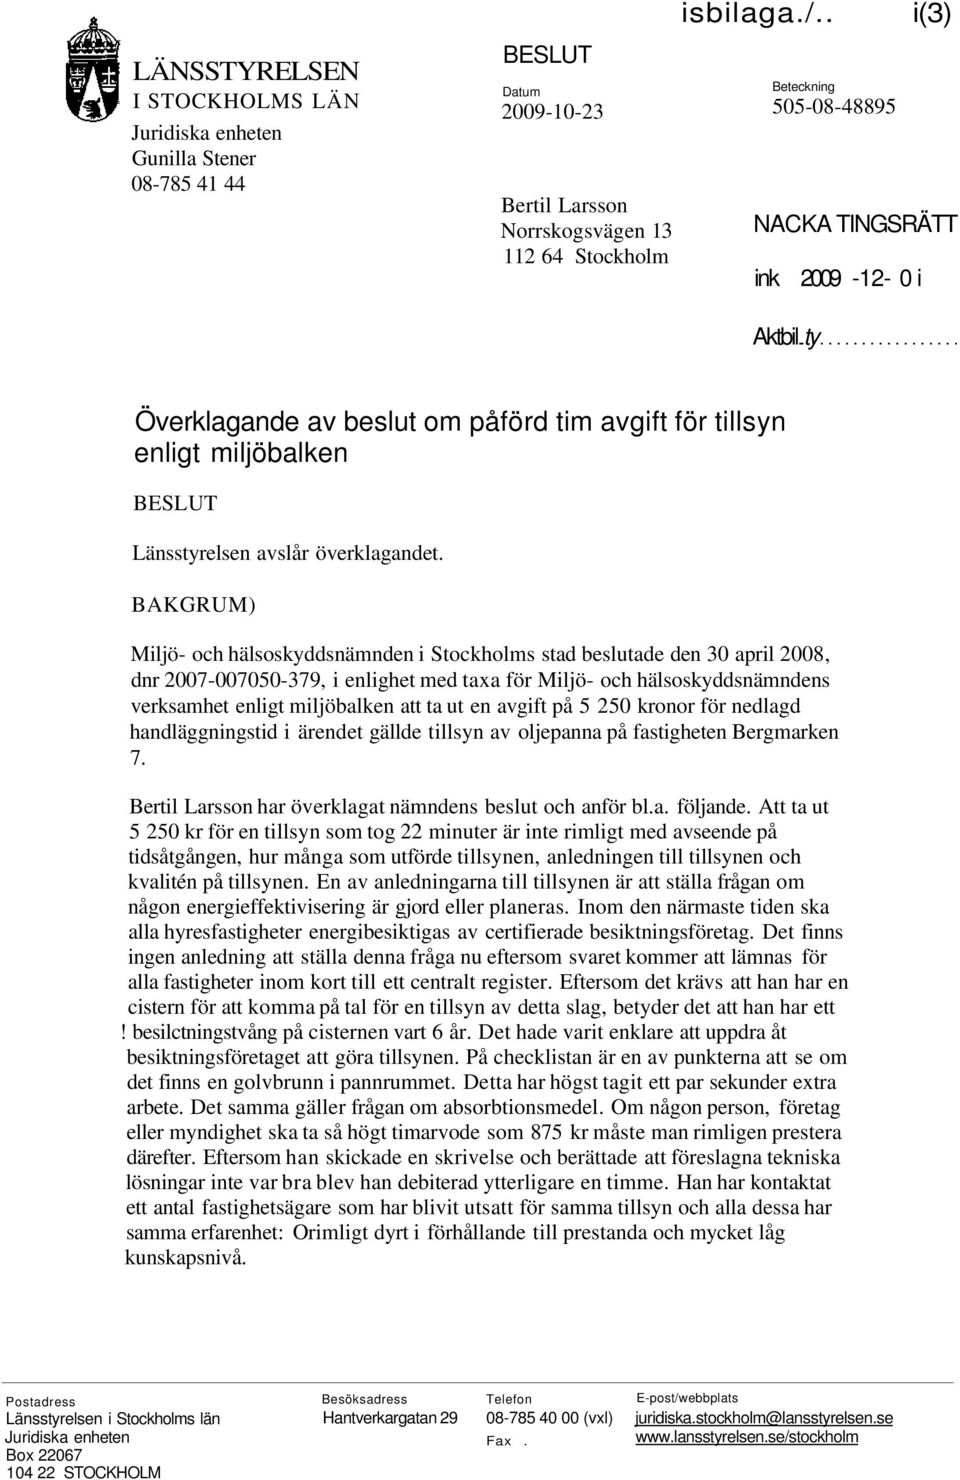 BAKGRUM) Miljö- och hälsoskyddsnämnden i Stockholms stad beslutade den 30 april 2008, dnr 2007-007050-379, i enlighet med taxa för Miljö- och hälsoskyddsnämndens verksamhet enligt miljöbalken att ta